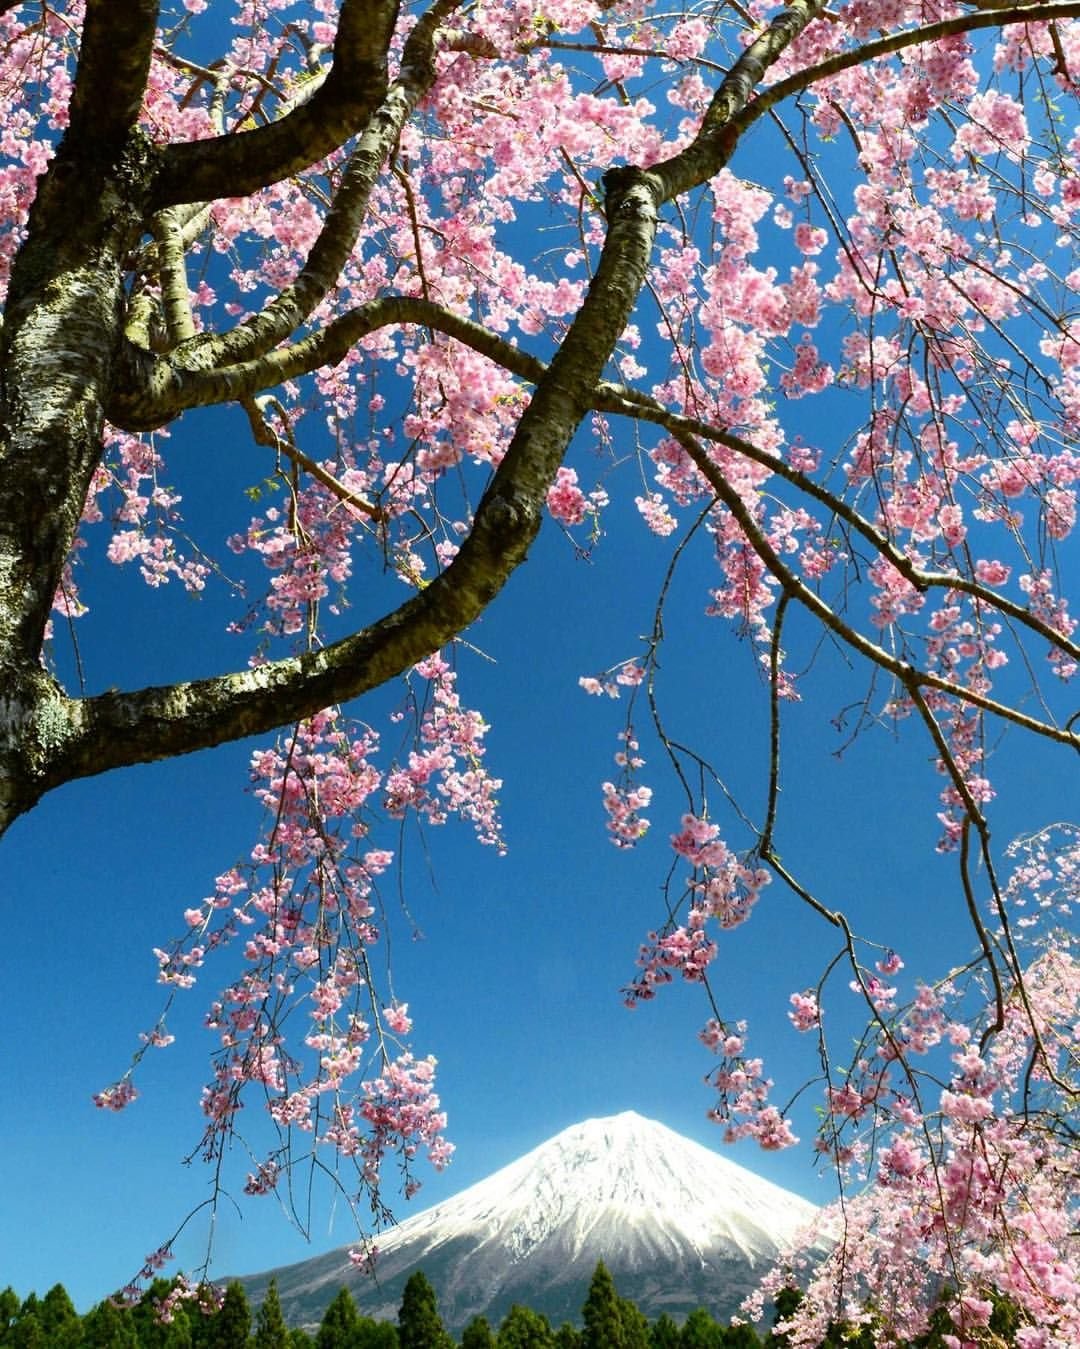 Japanese blossom. Черри блоссом дерево. Сакура черри блоссом дерево. Вишня Фудзи дерево. Сакура японская вишня.